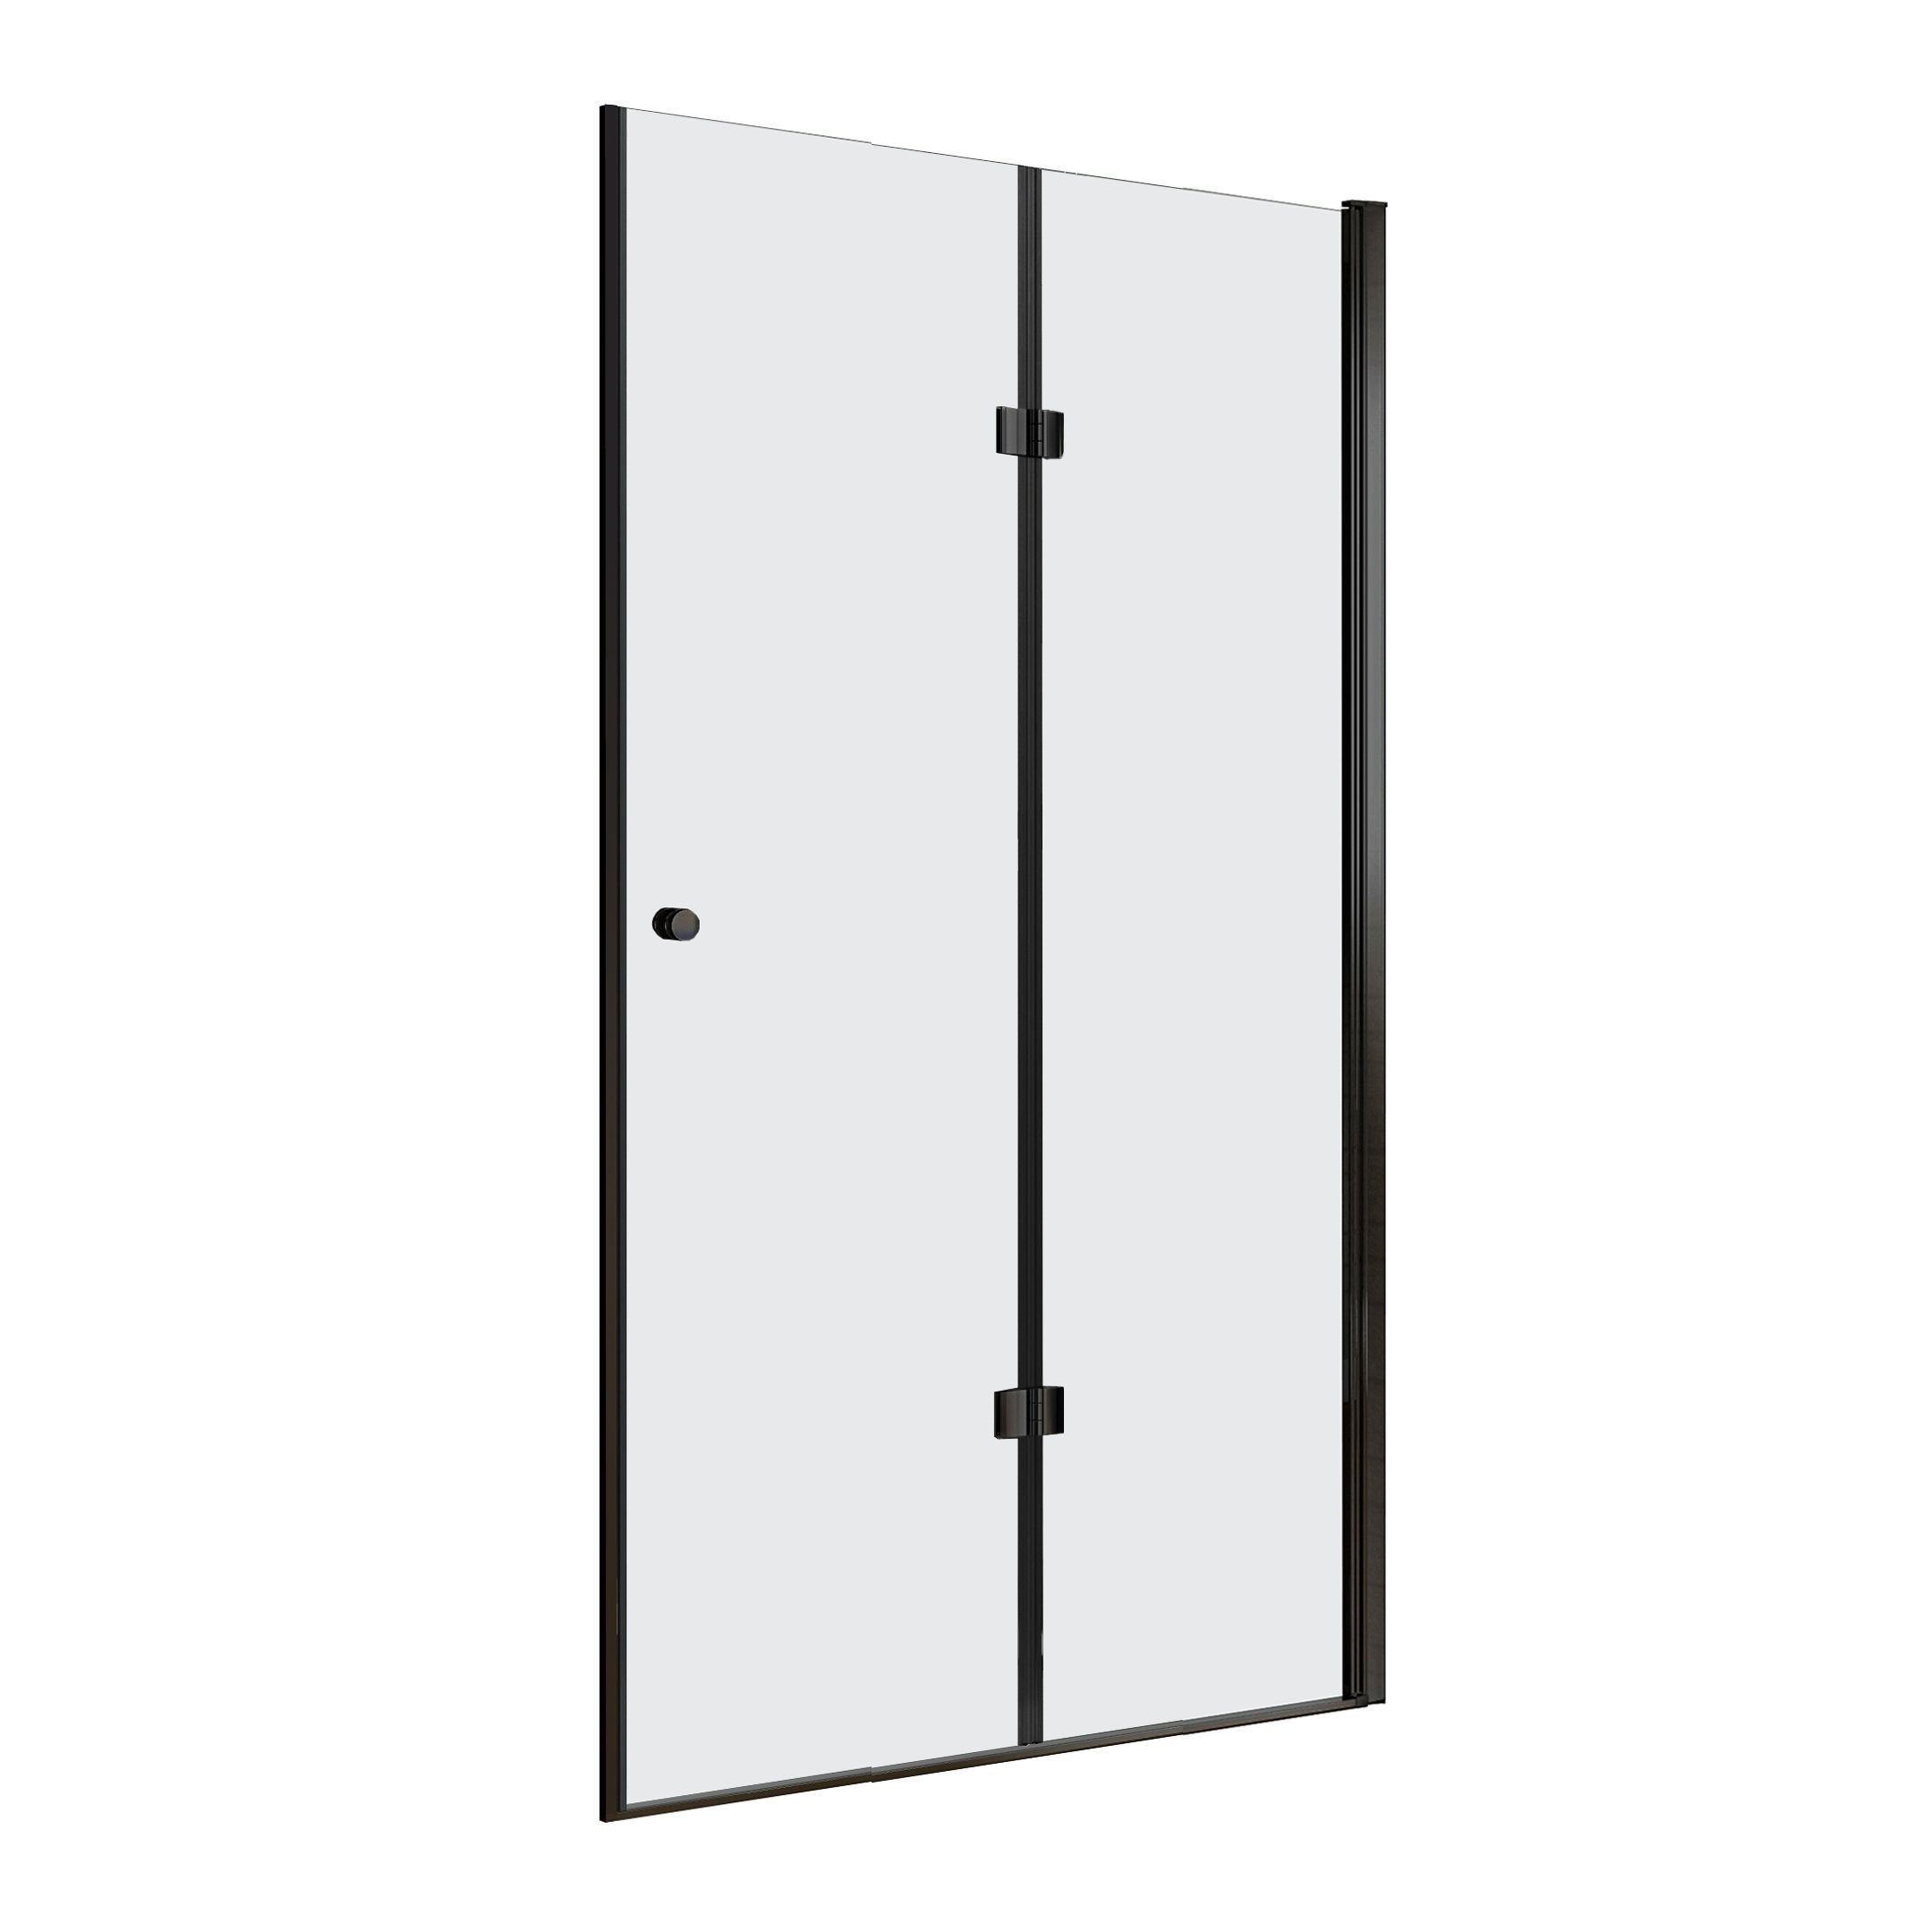 1 shower door folding door